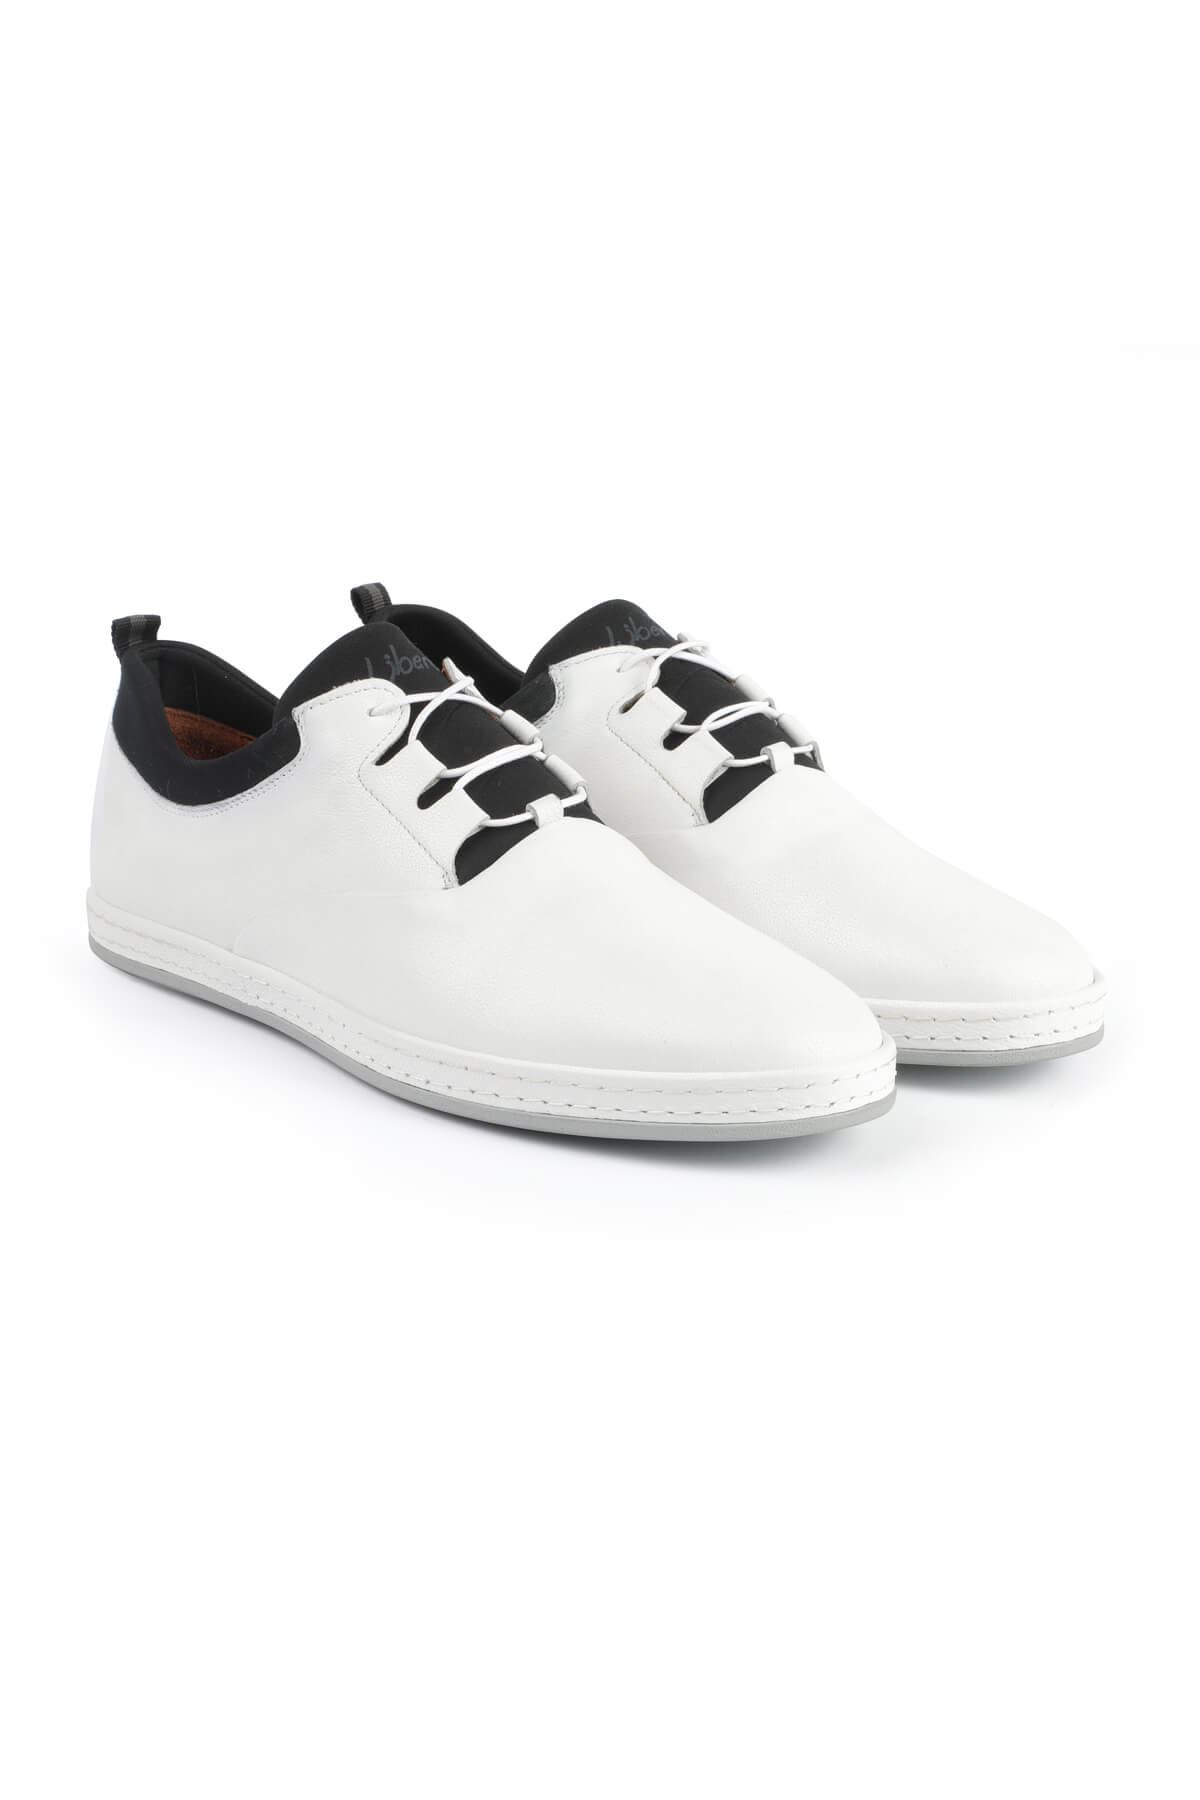 Libero 2979 White Casual Shoes